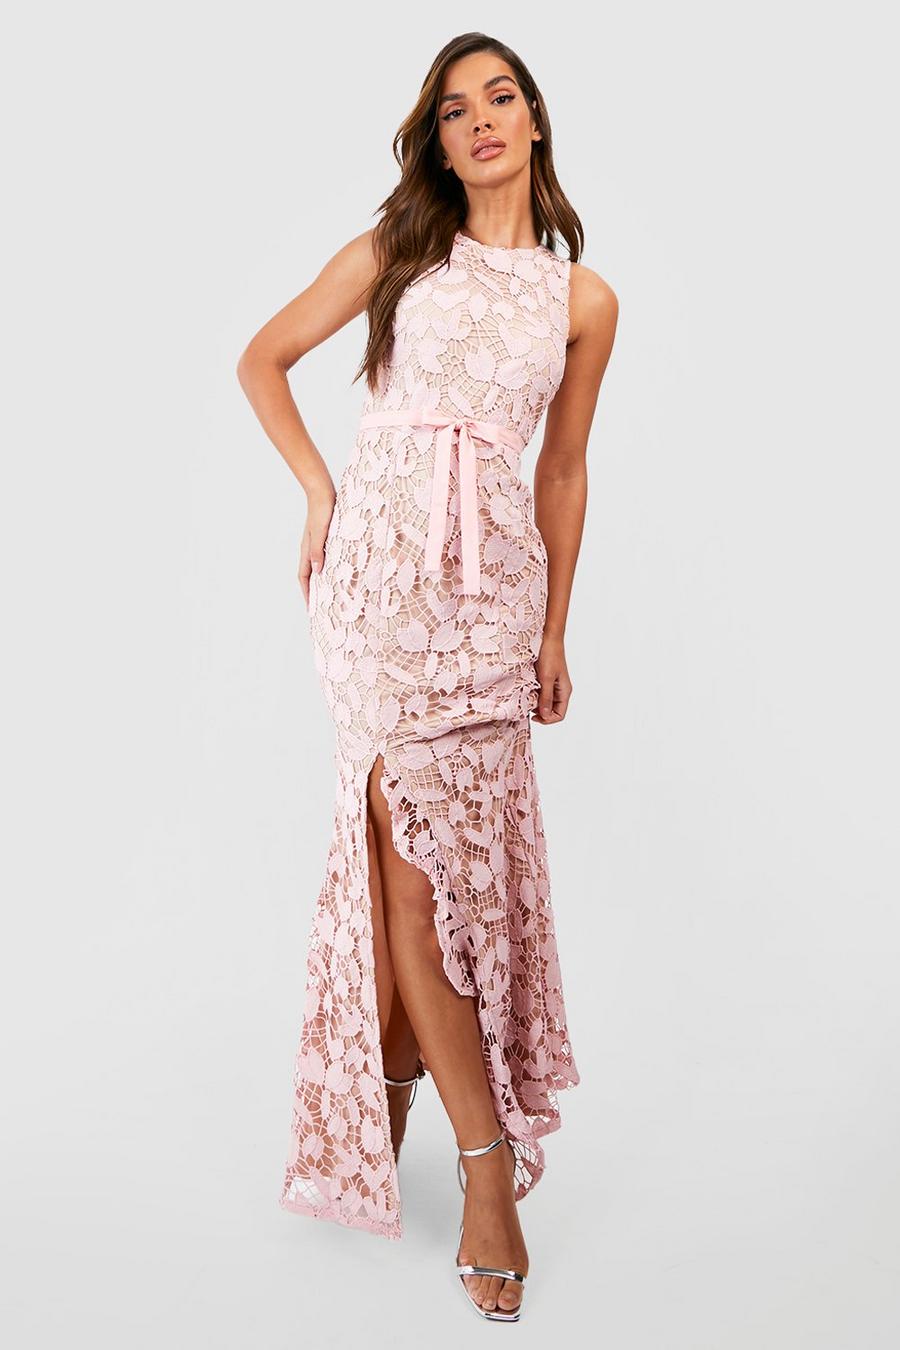 Blush pink Lace Ruffle Split Maxi Dress